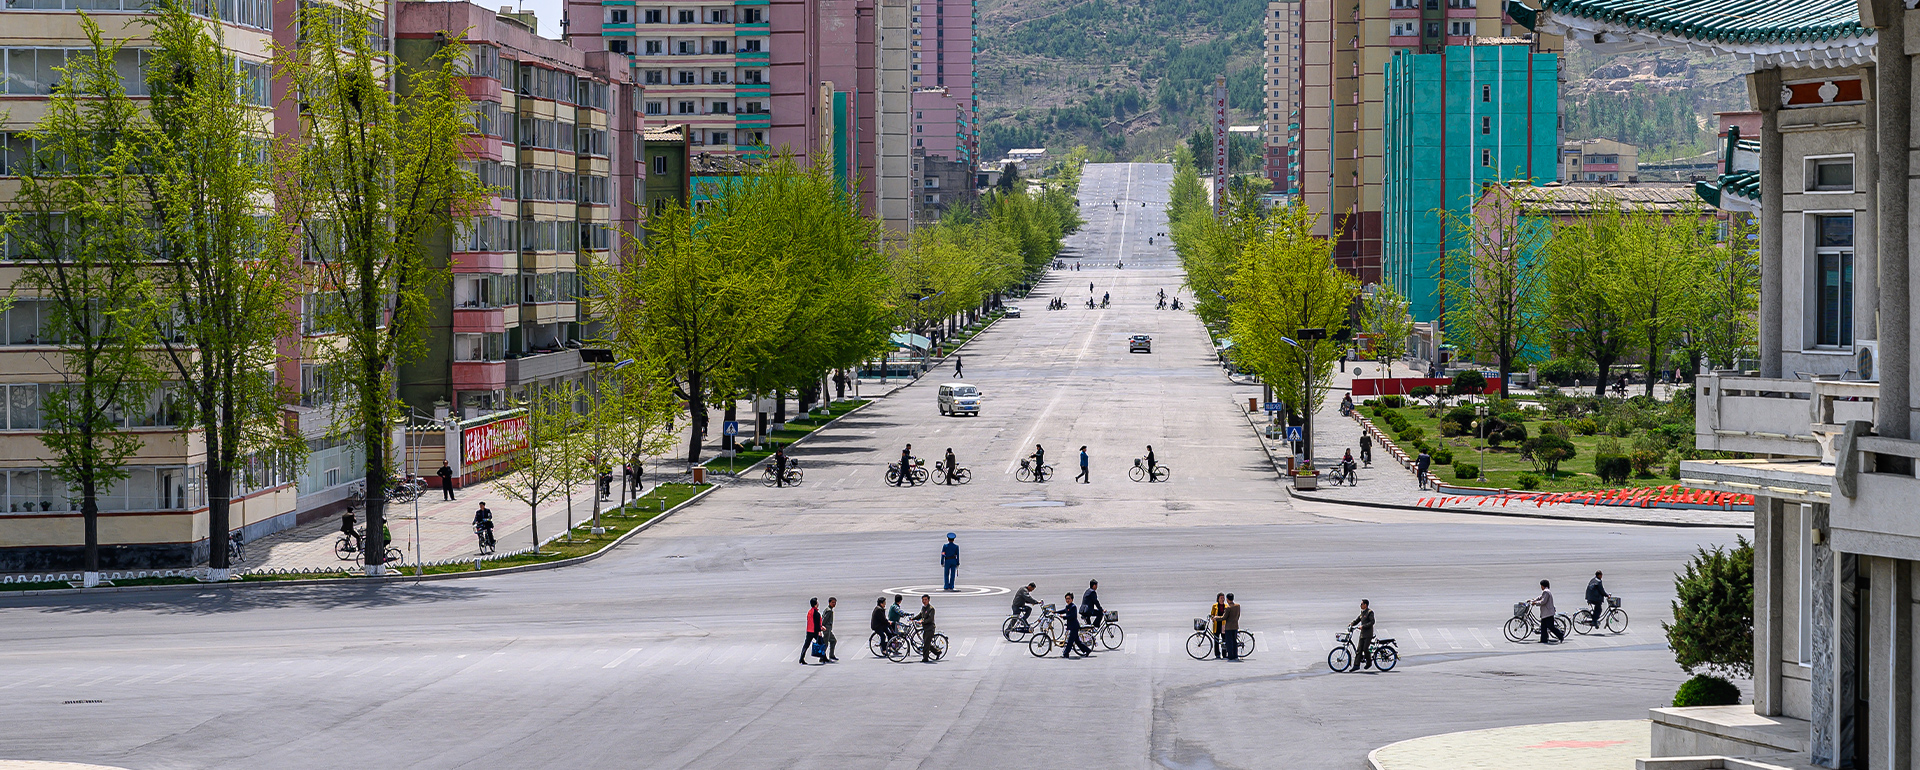 Radkulturreise Nordkorea